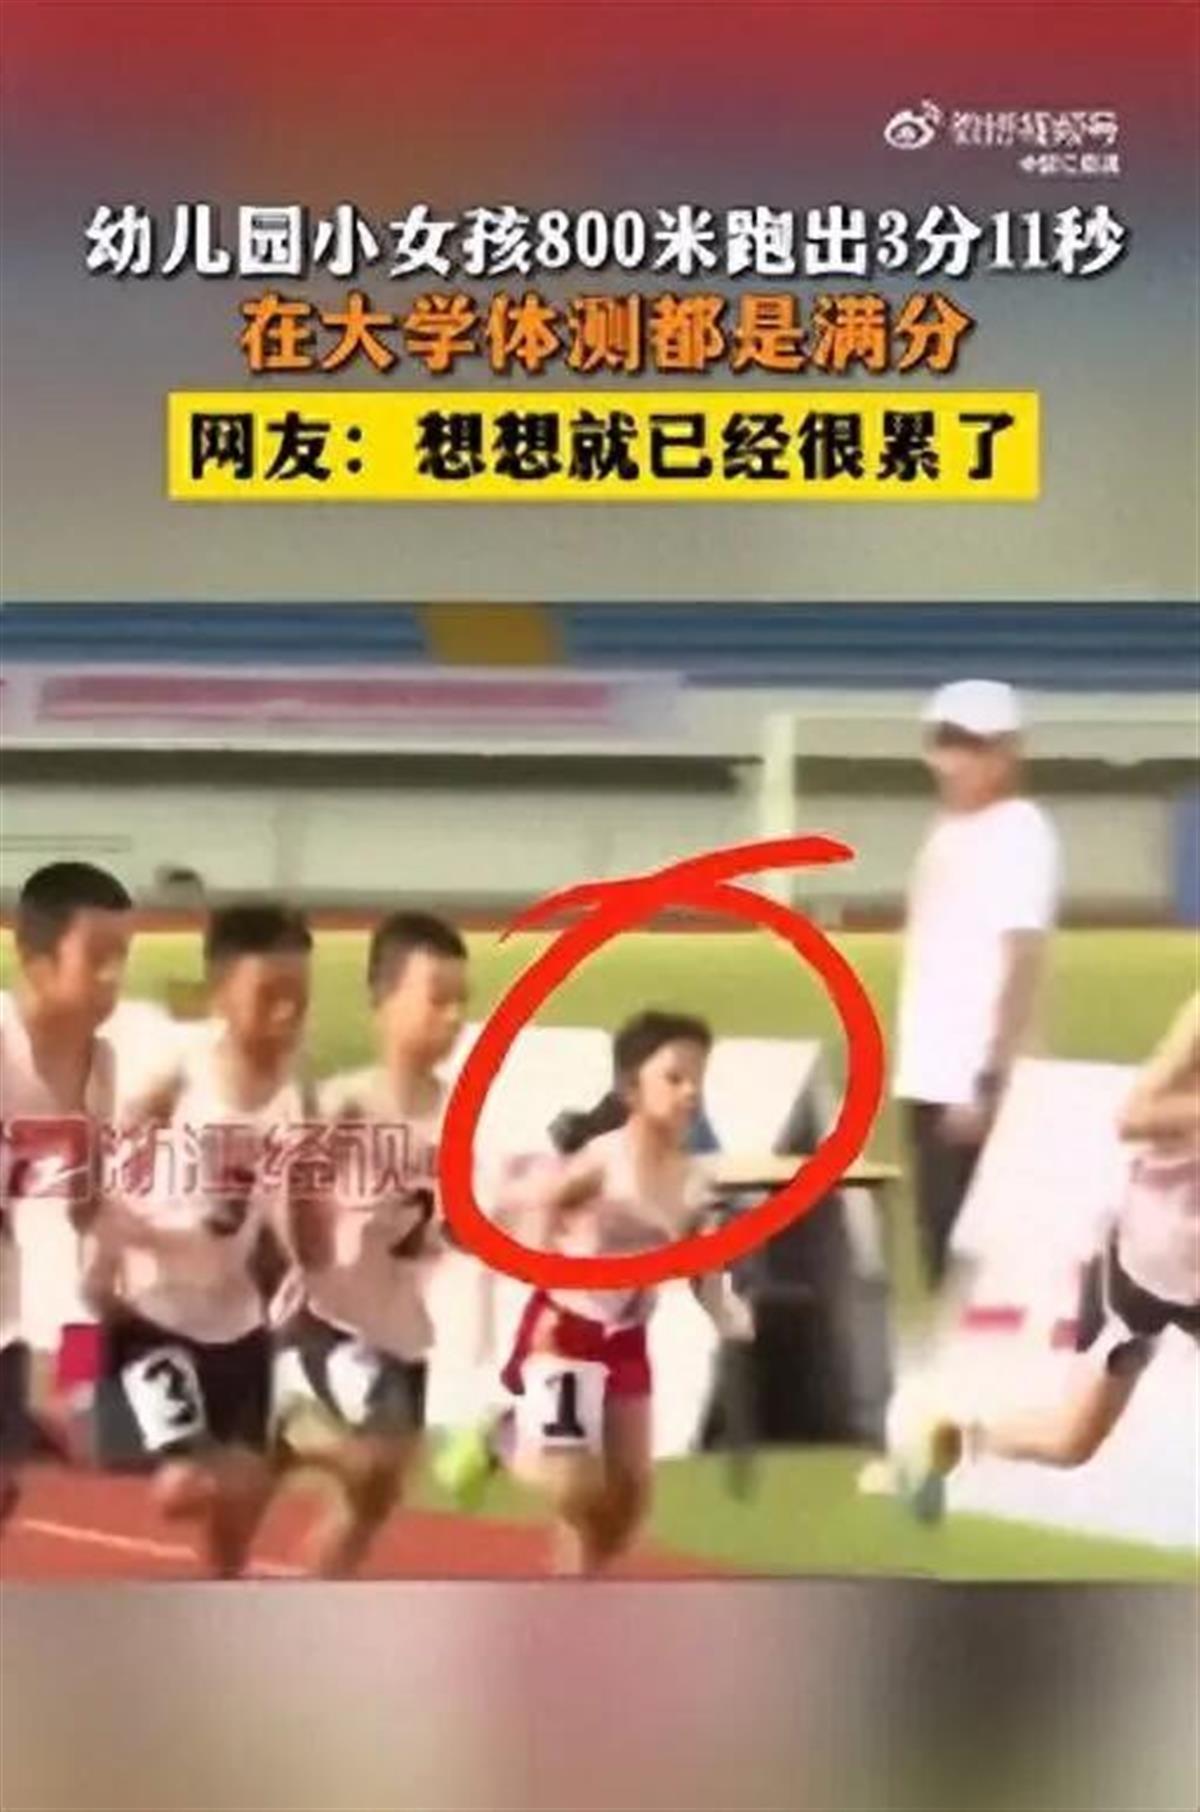 Ａ幼儿园小女孩800米跑3分11秒.jpg